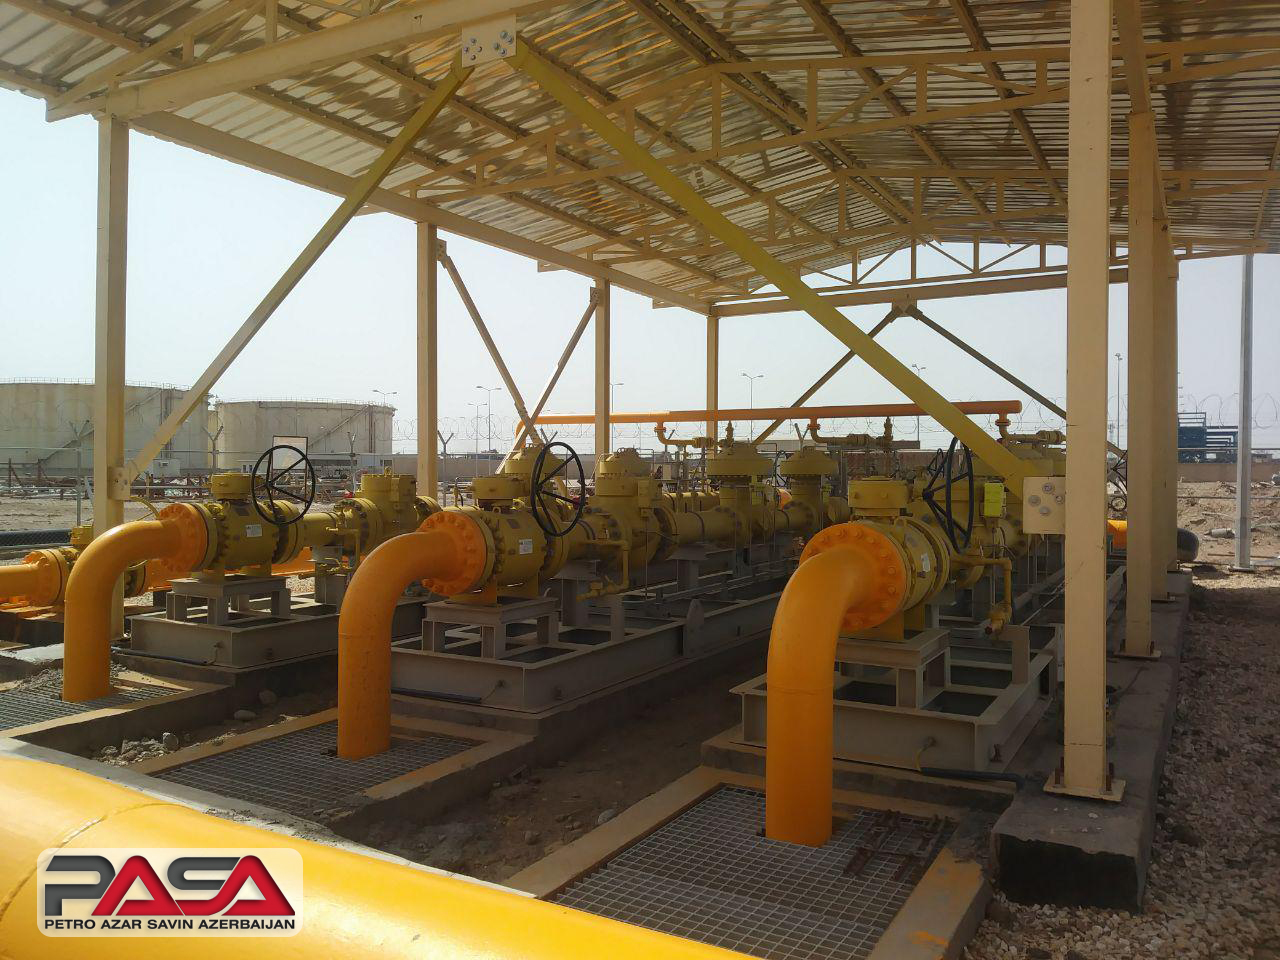  اورهال و سرویس قسمت تقلیل فشار (reducing) ایستگاه گاز نیروگاه الصدر بغداد